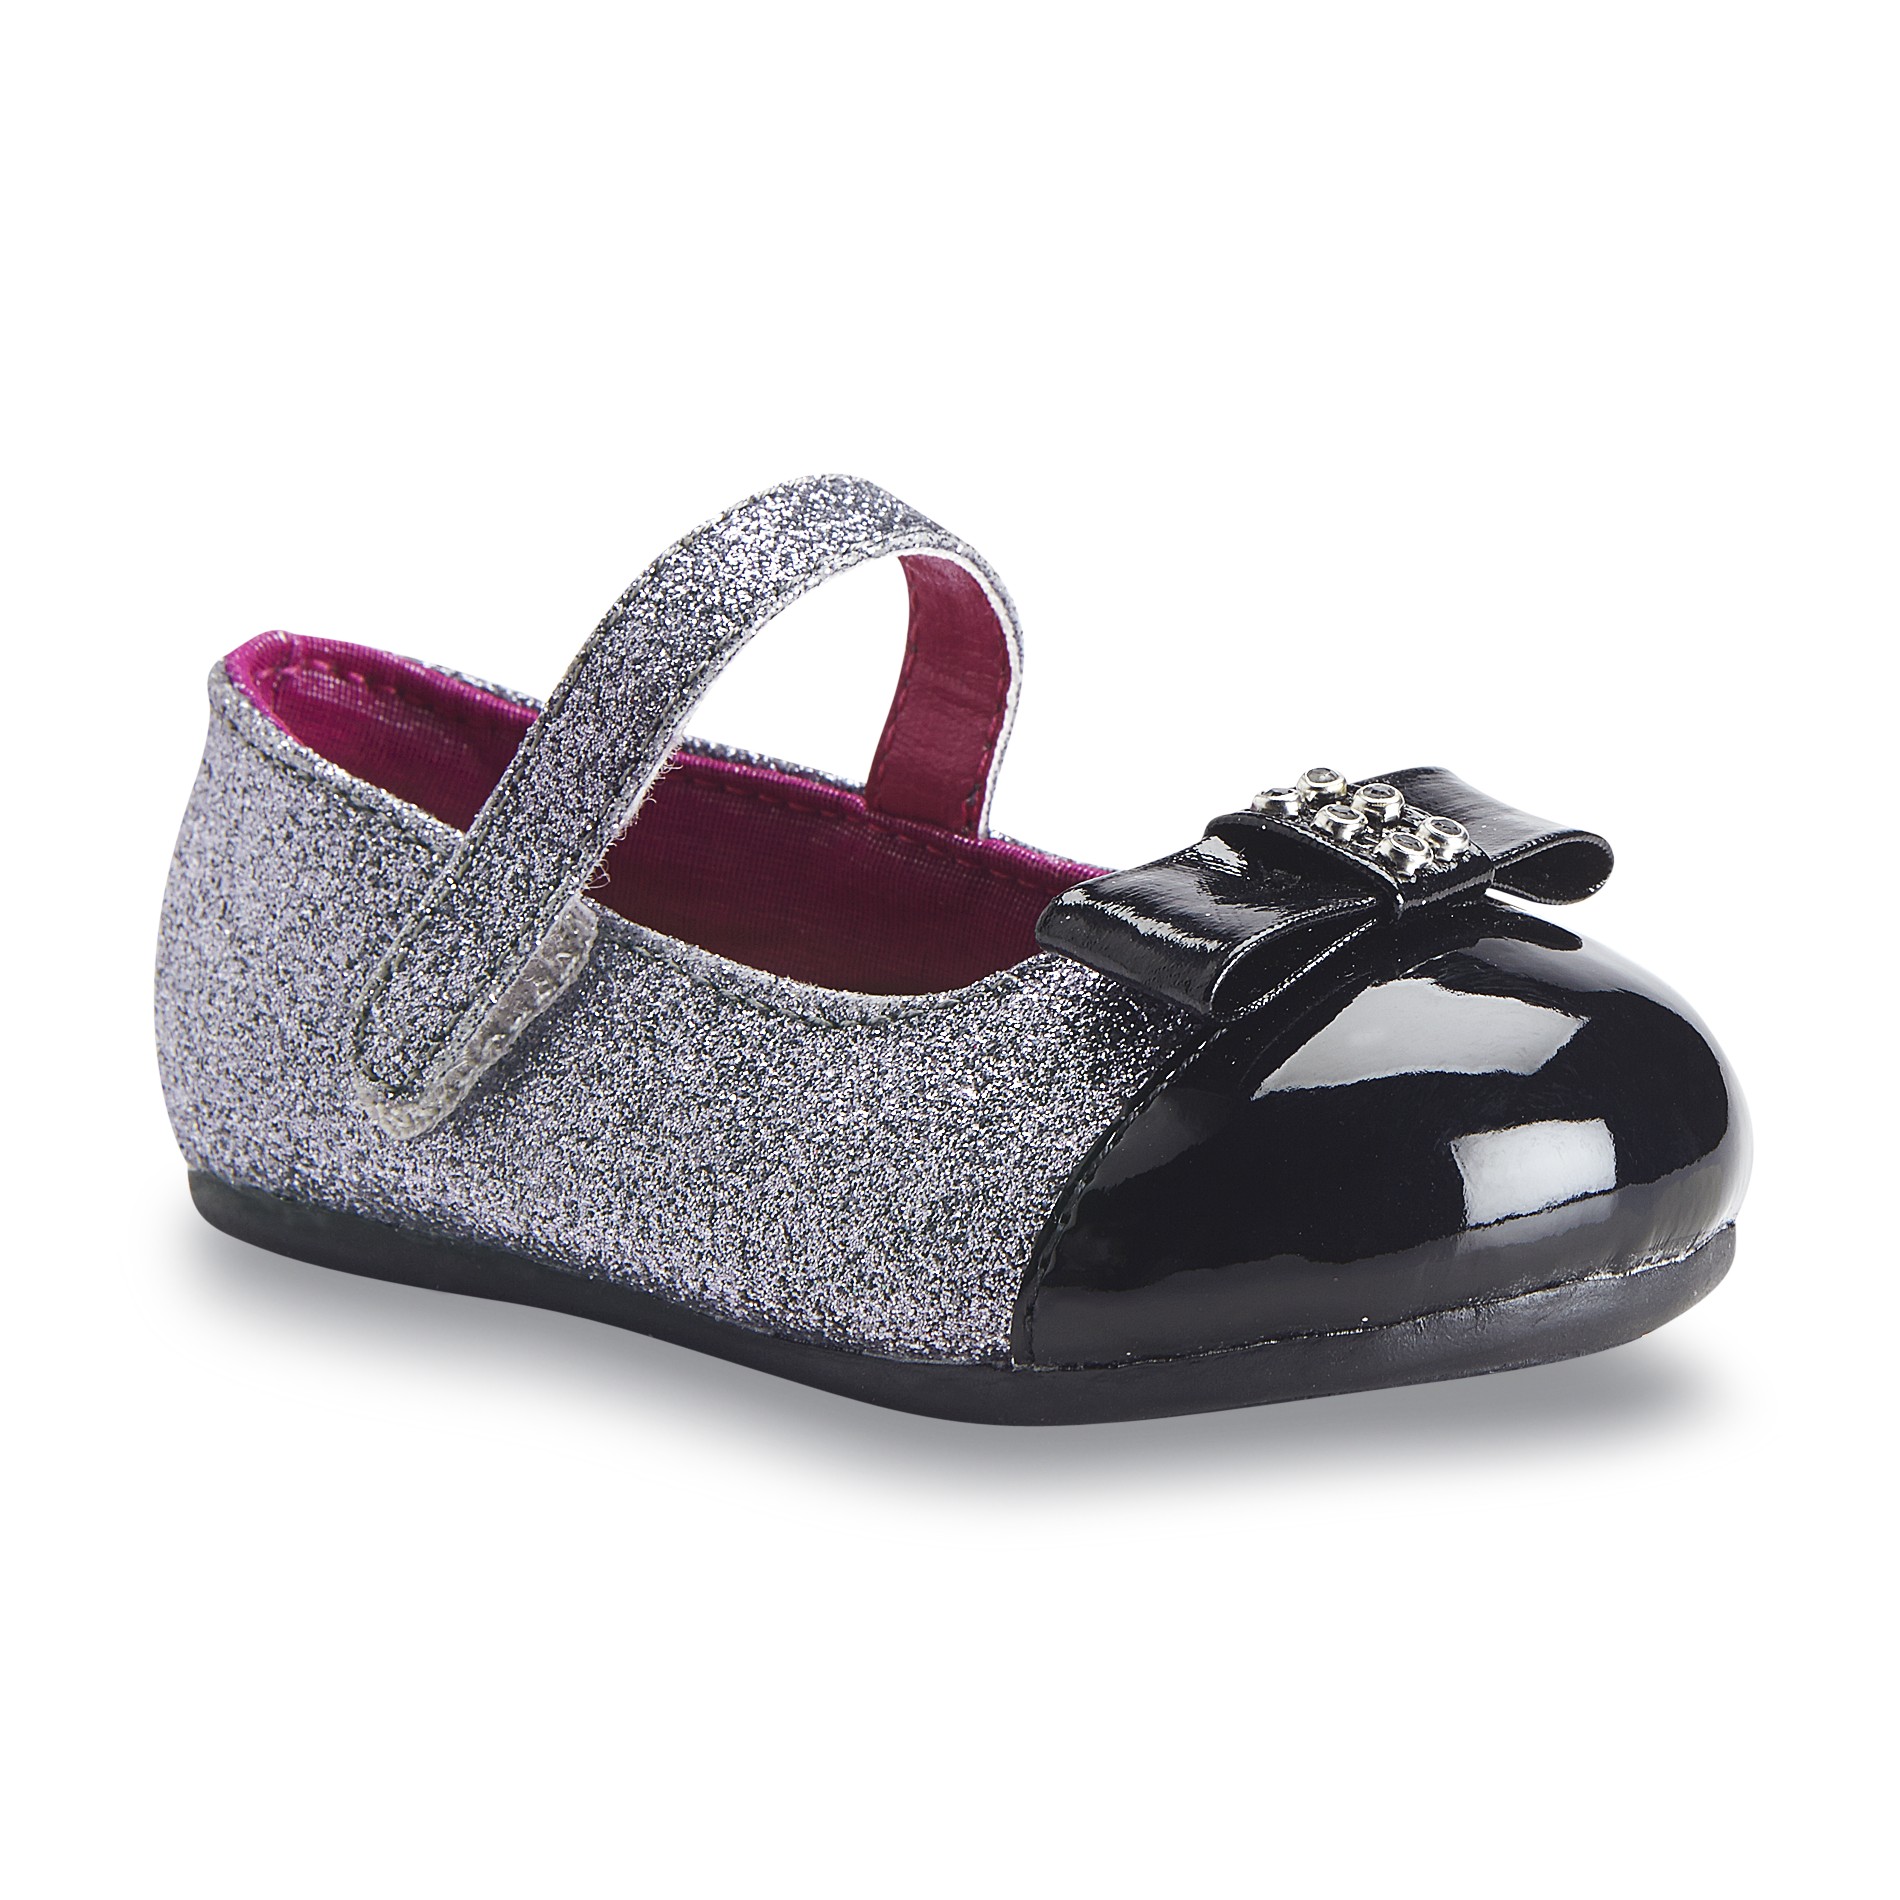 Natural Steps Toddler Girl's Scarlett Silver/Black Glitter Mary Jane Shoe